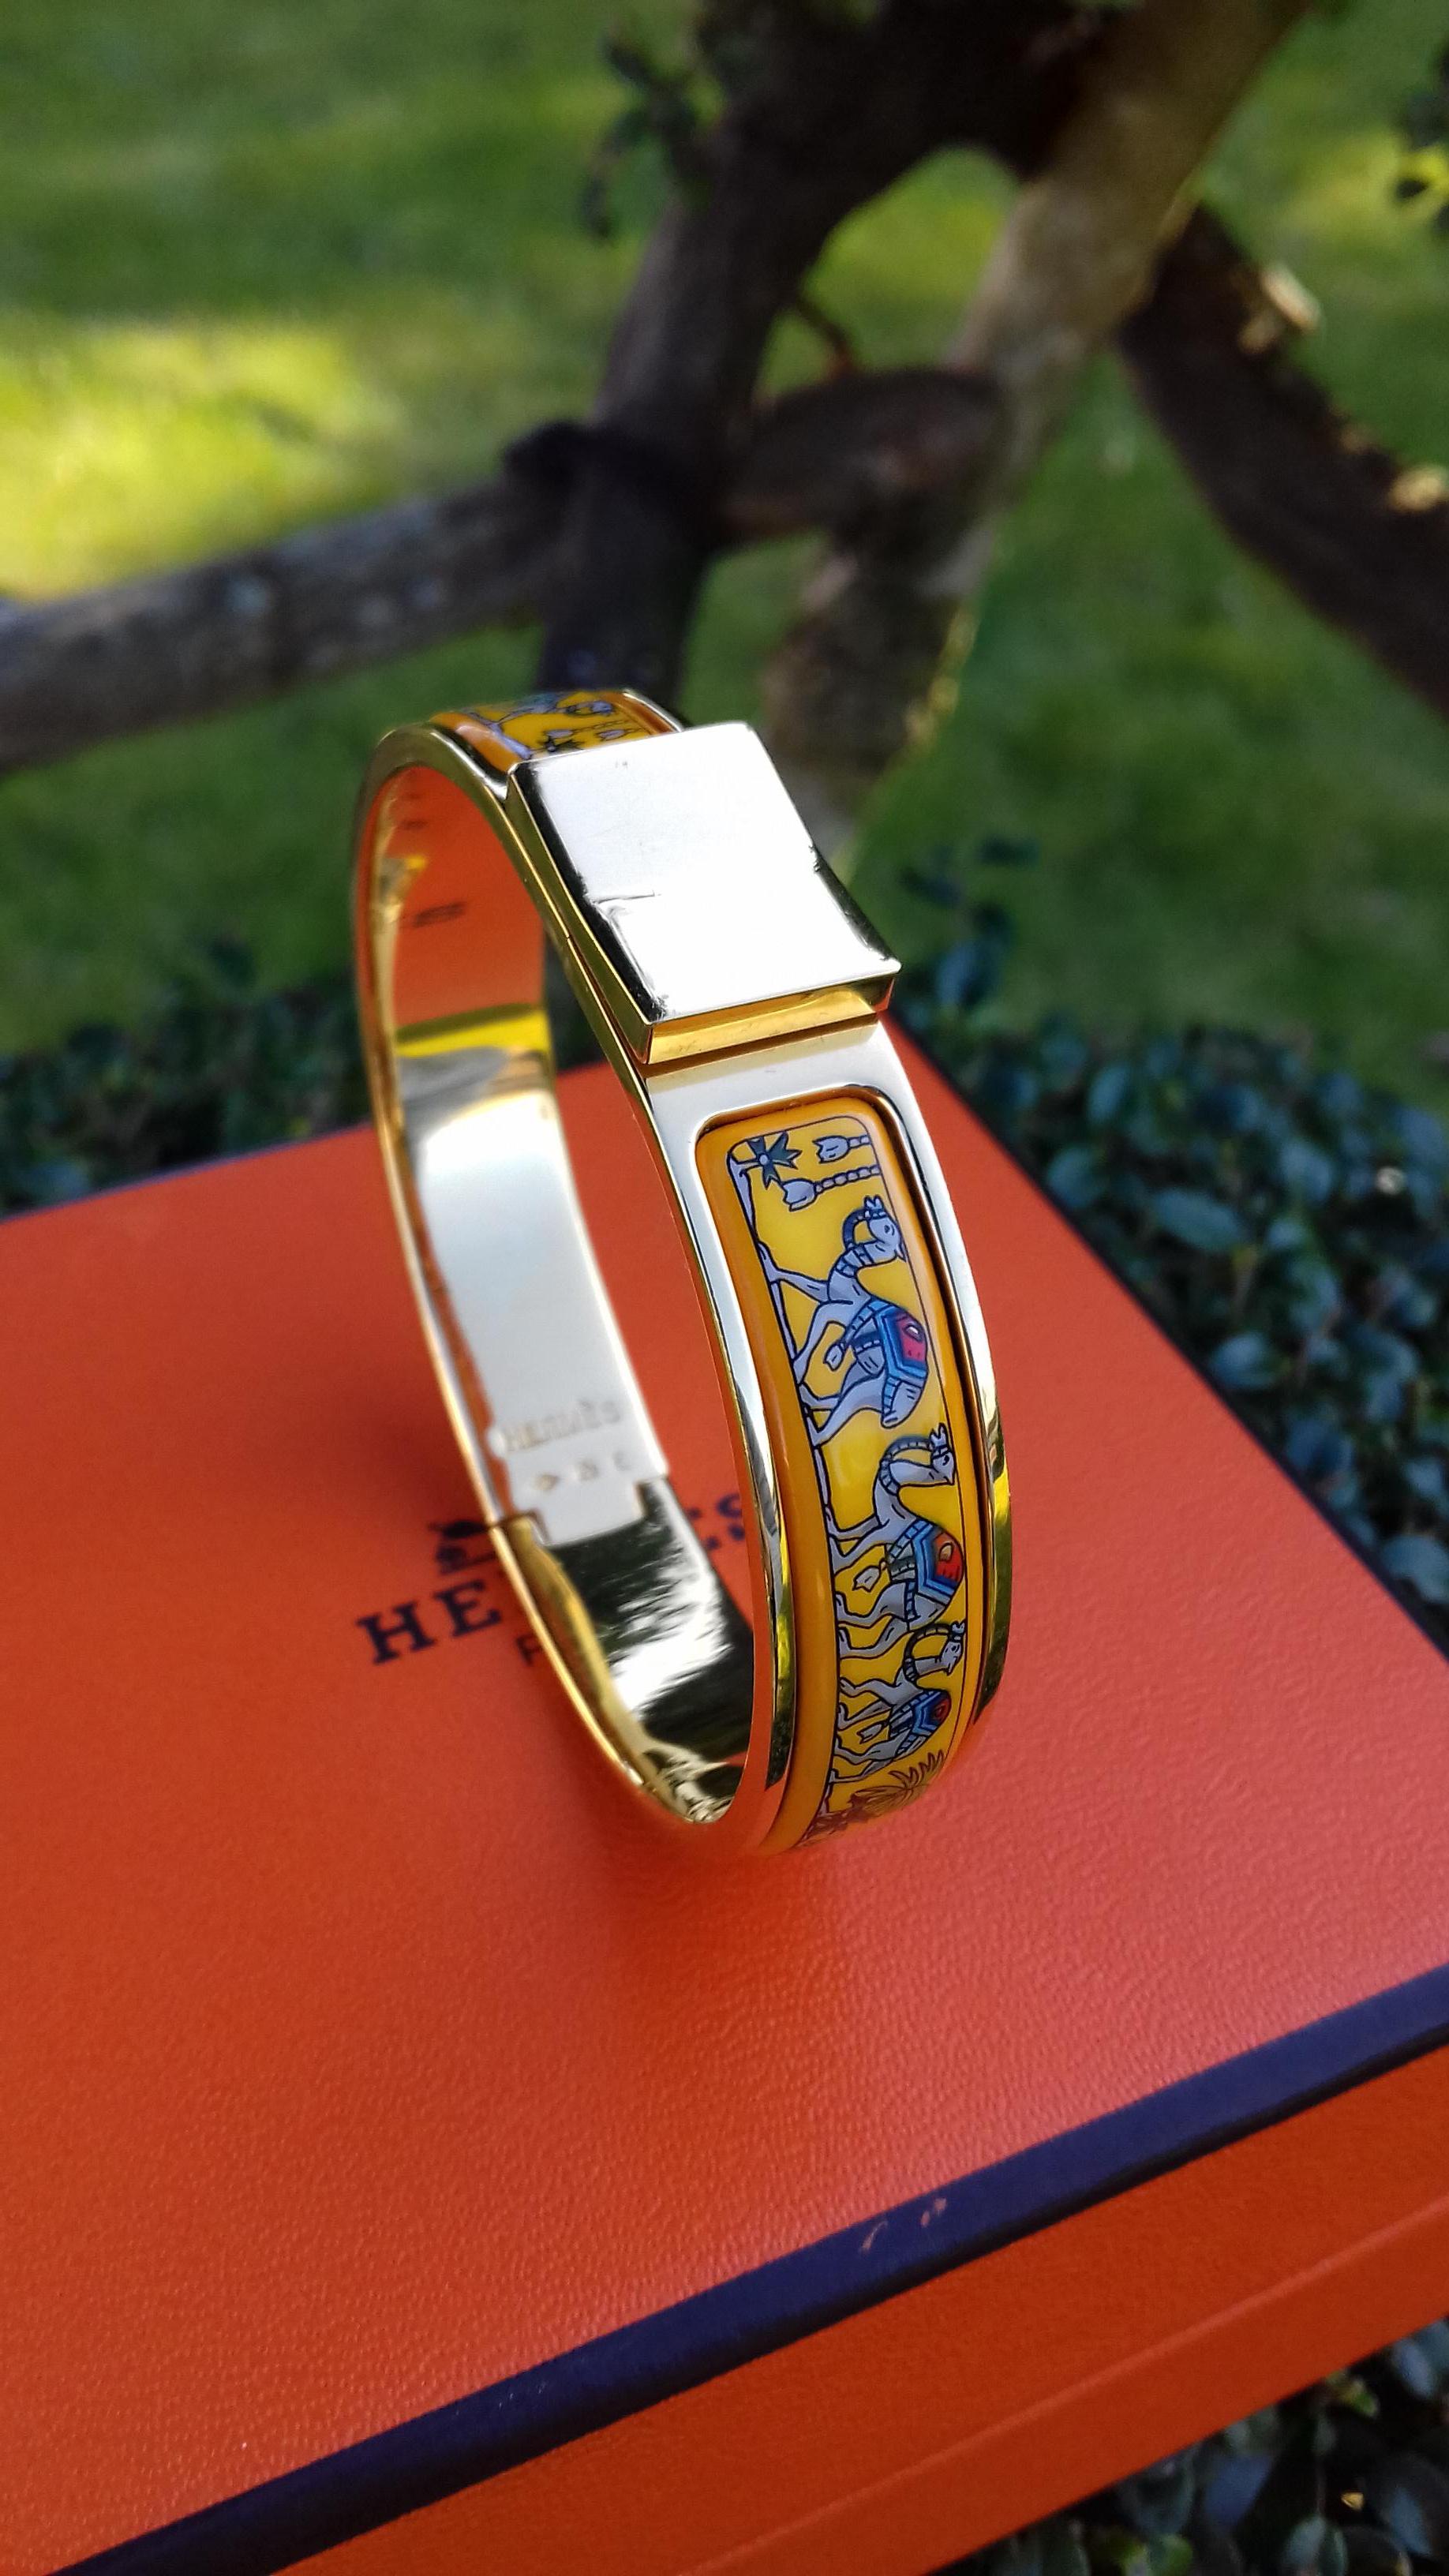 Seltene schöne authentische Hermès-Armband

